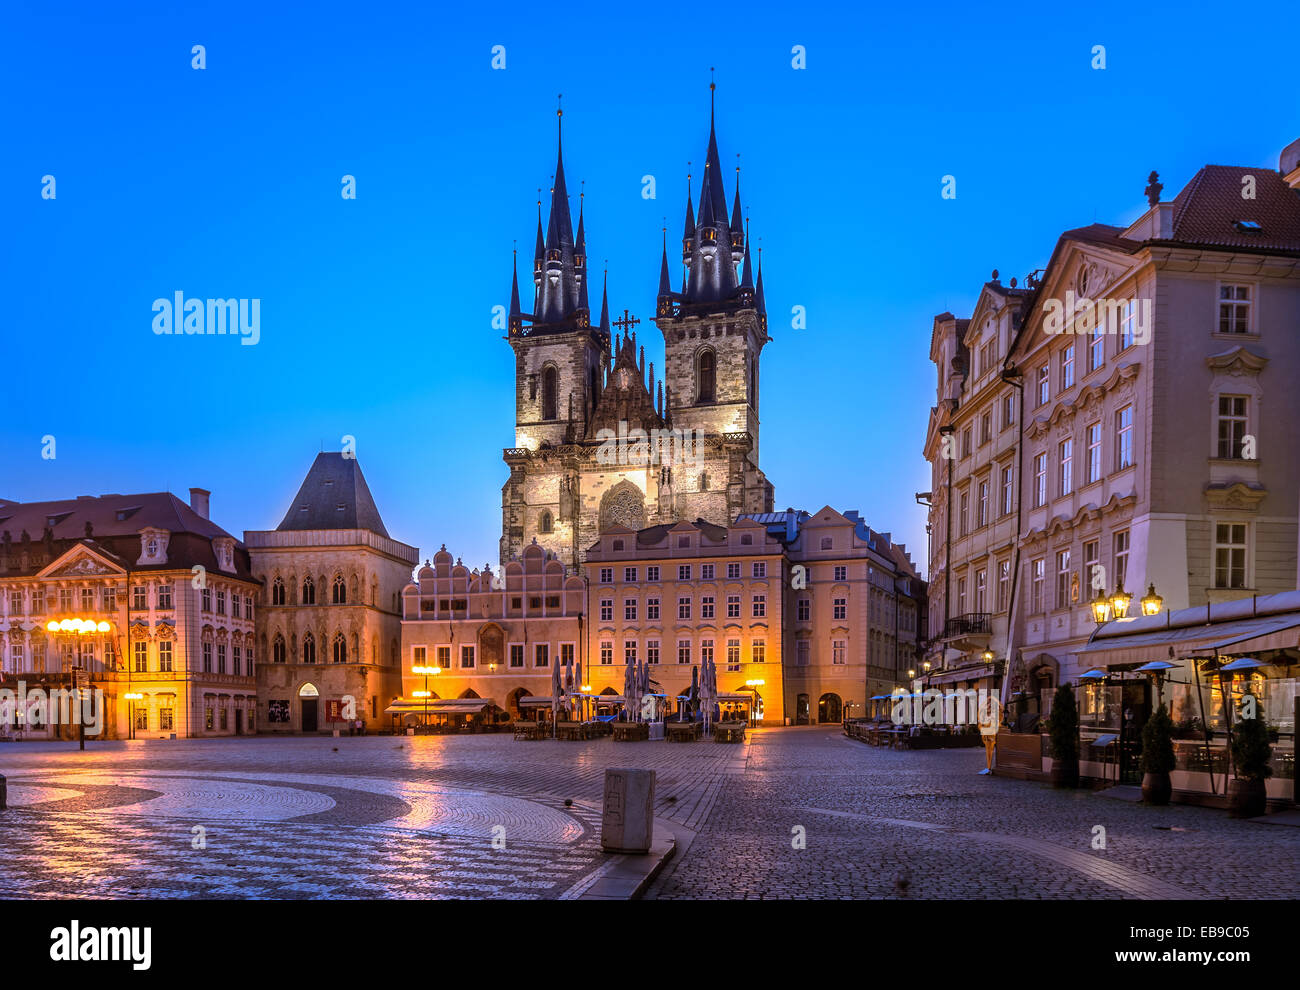 Uno dei simboli di Praga, la Chiesa di Nostra Signora di Tyn, vecchia chiesa gotica in città vecchia piazza principale, Staré Mesto Praga. Foto Stock